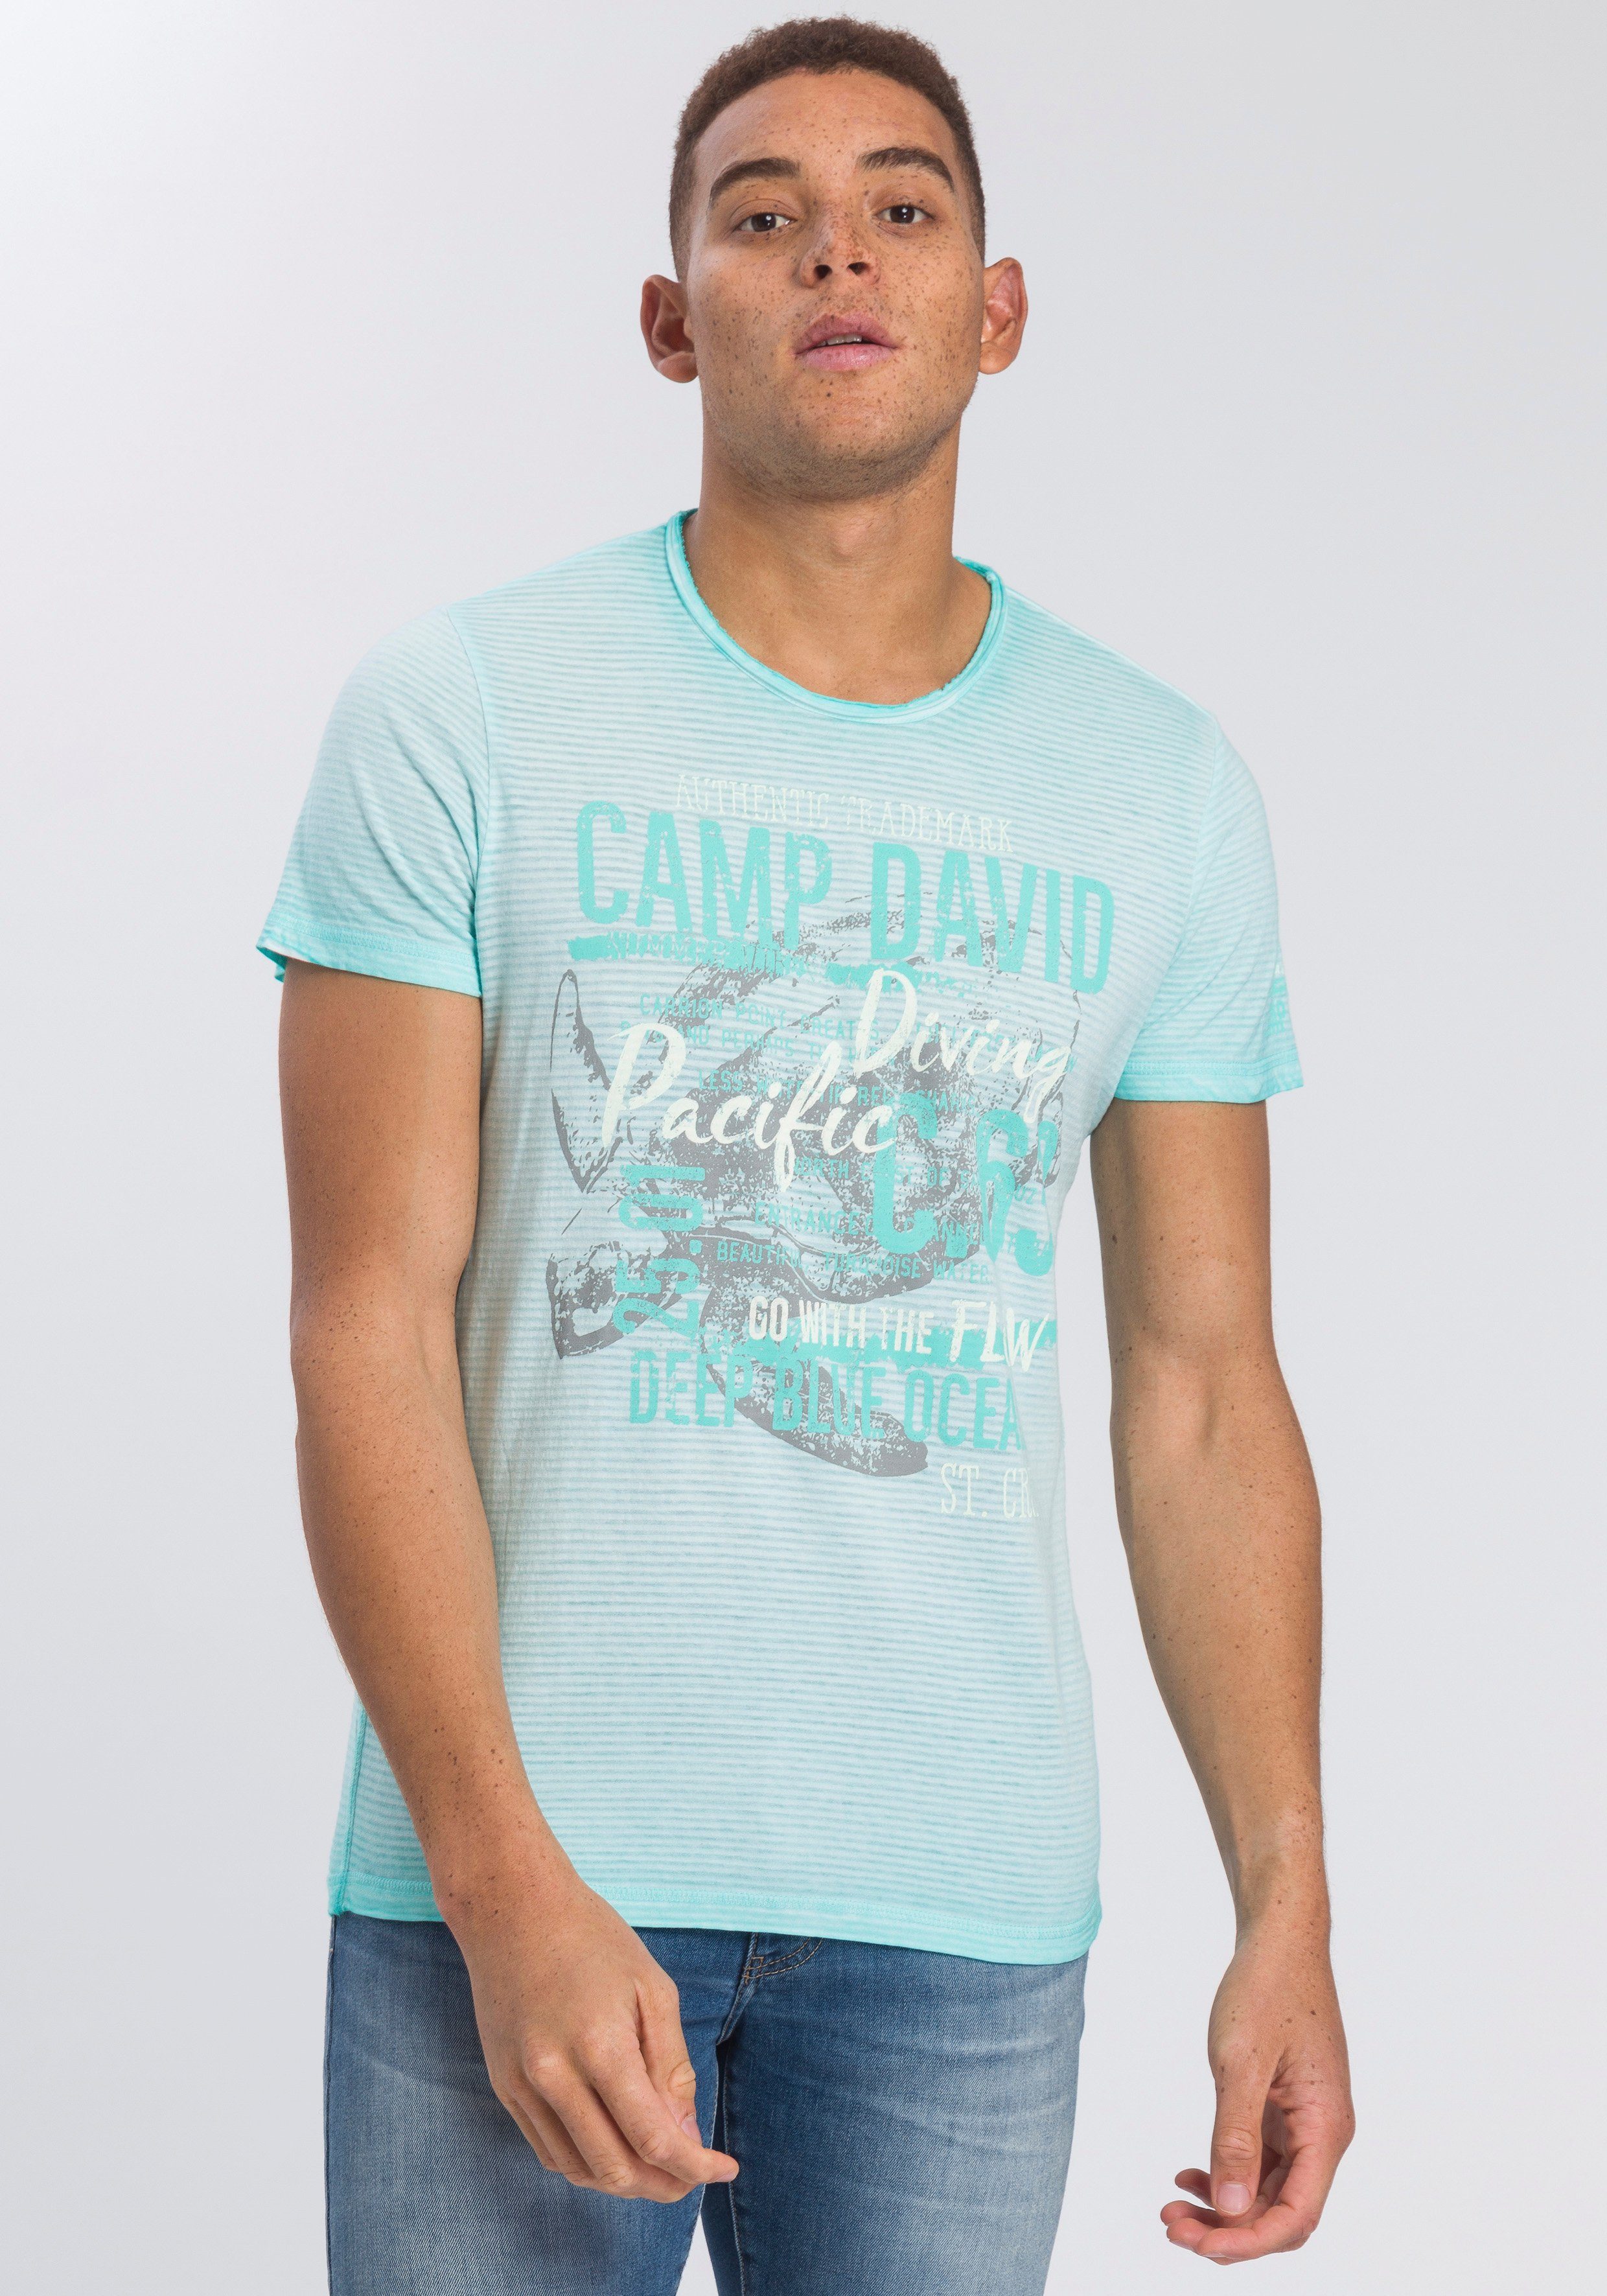 Camp David Herren Shirts online kaufen | OTTO